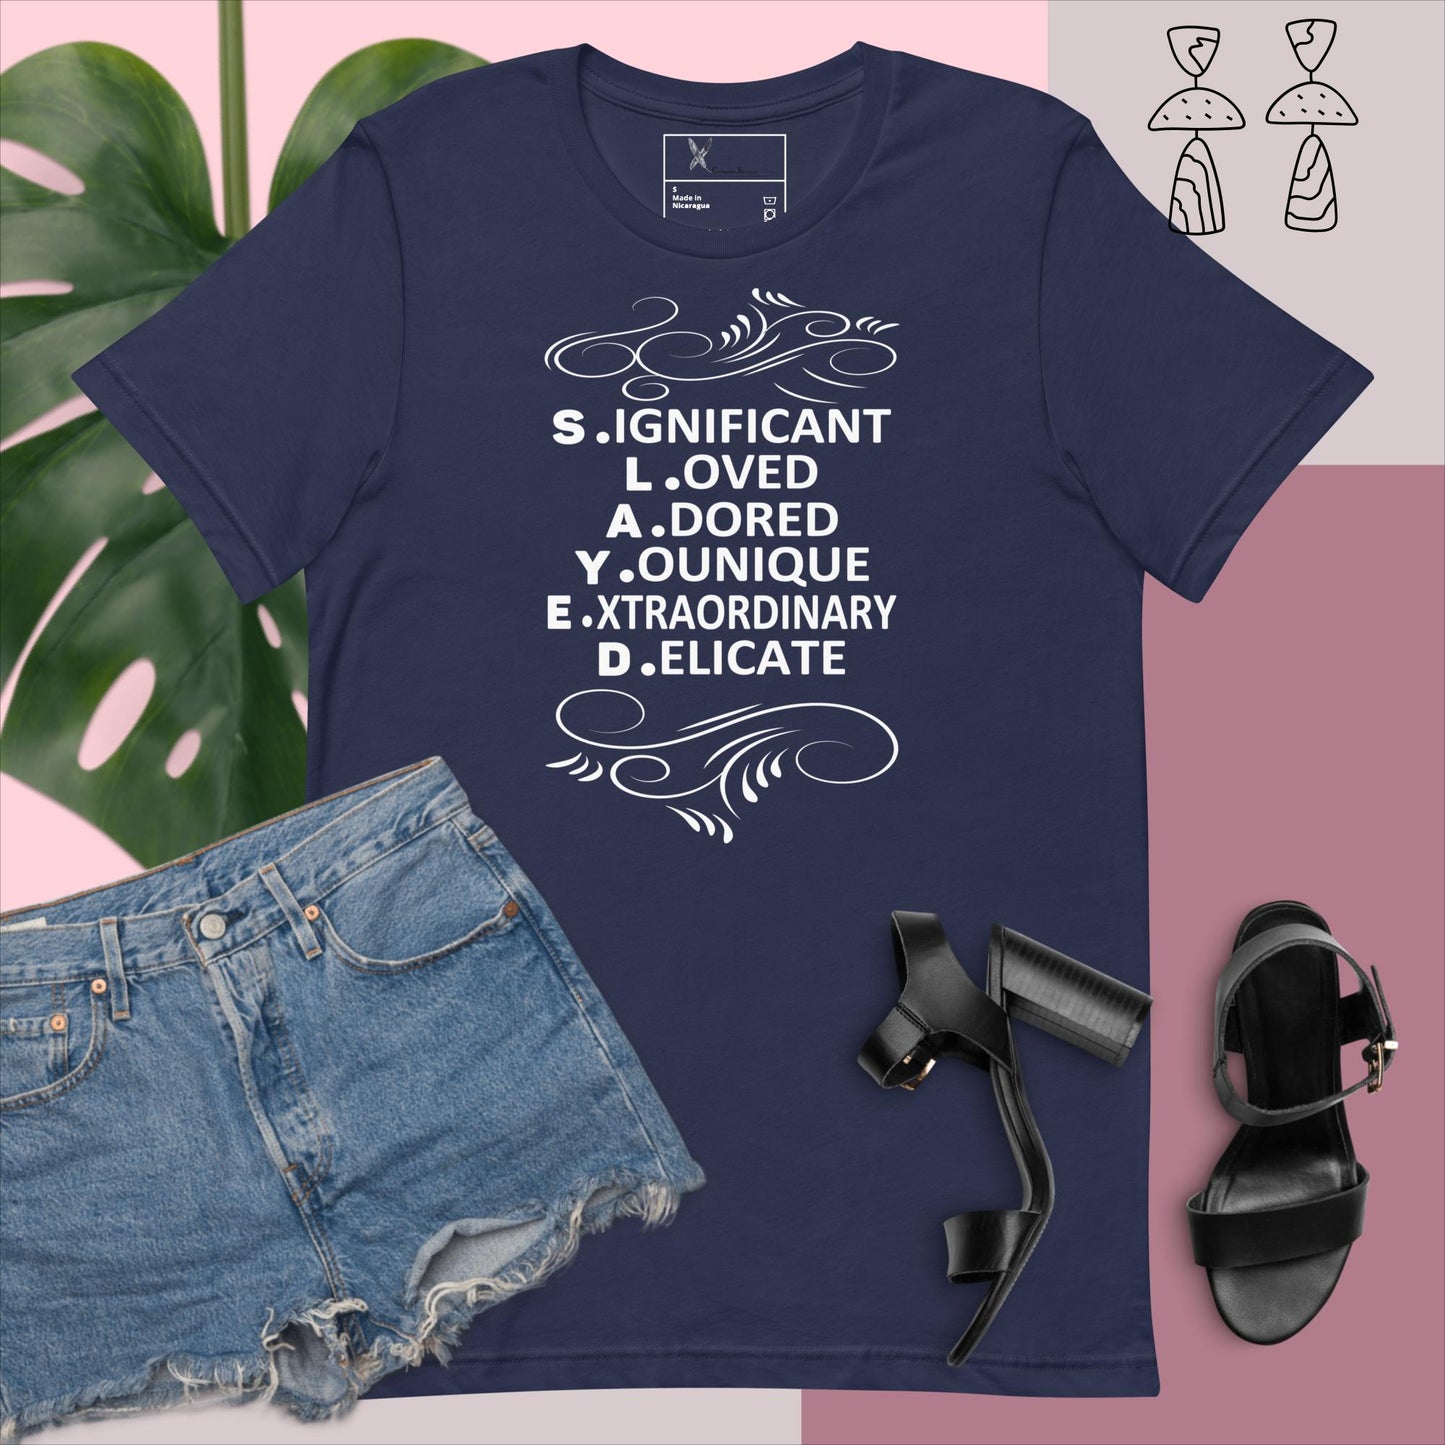 S.L.A.Y.E.D. Women's Empowerment T-Shirt